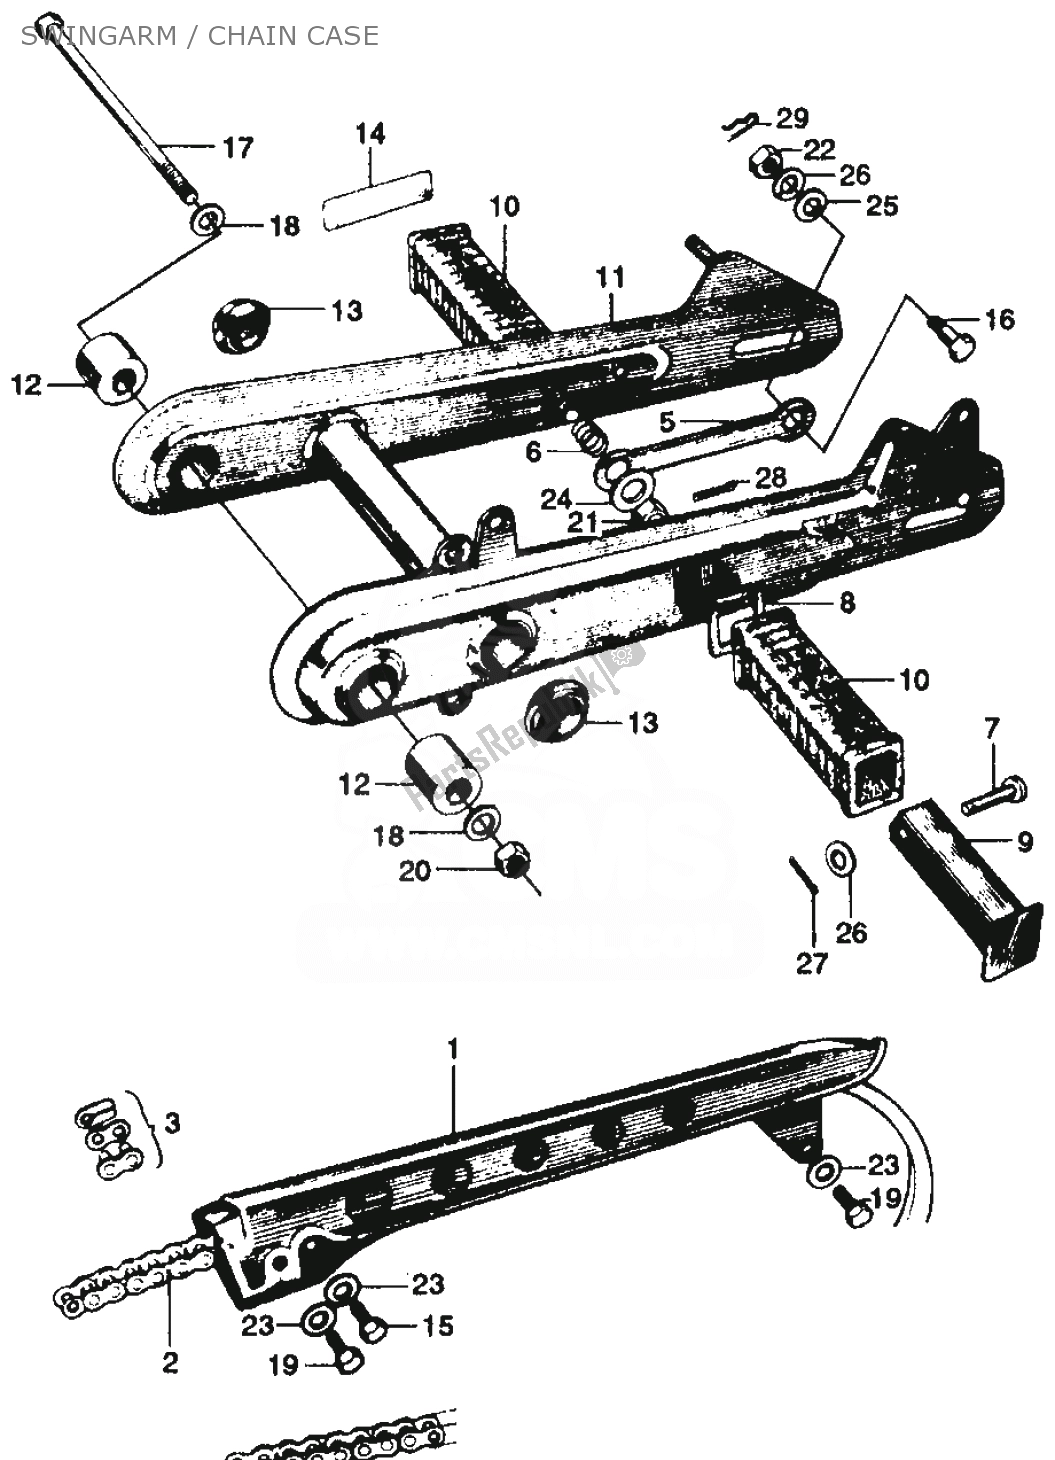 Alle onderdelen voor de Swingarm / Chain Case van de Honda SS 125 1967